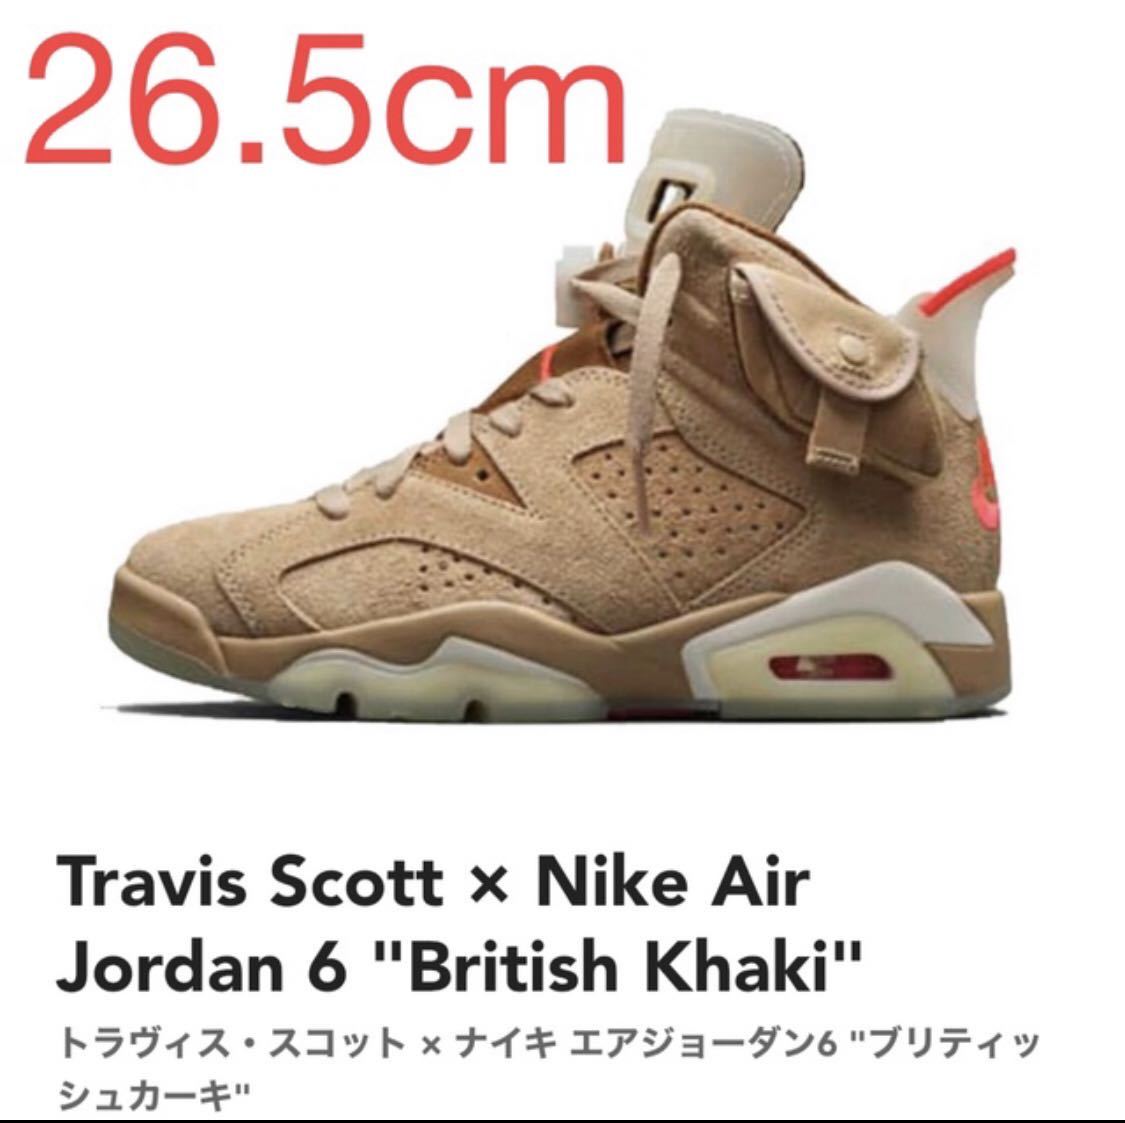 Travis Scott × Nike Air Jordan 6 British Khaki トラヴィス・スコット × ナイキ エアジョーダン6 DH0690-200 26.5cm US8.5 新品